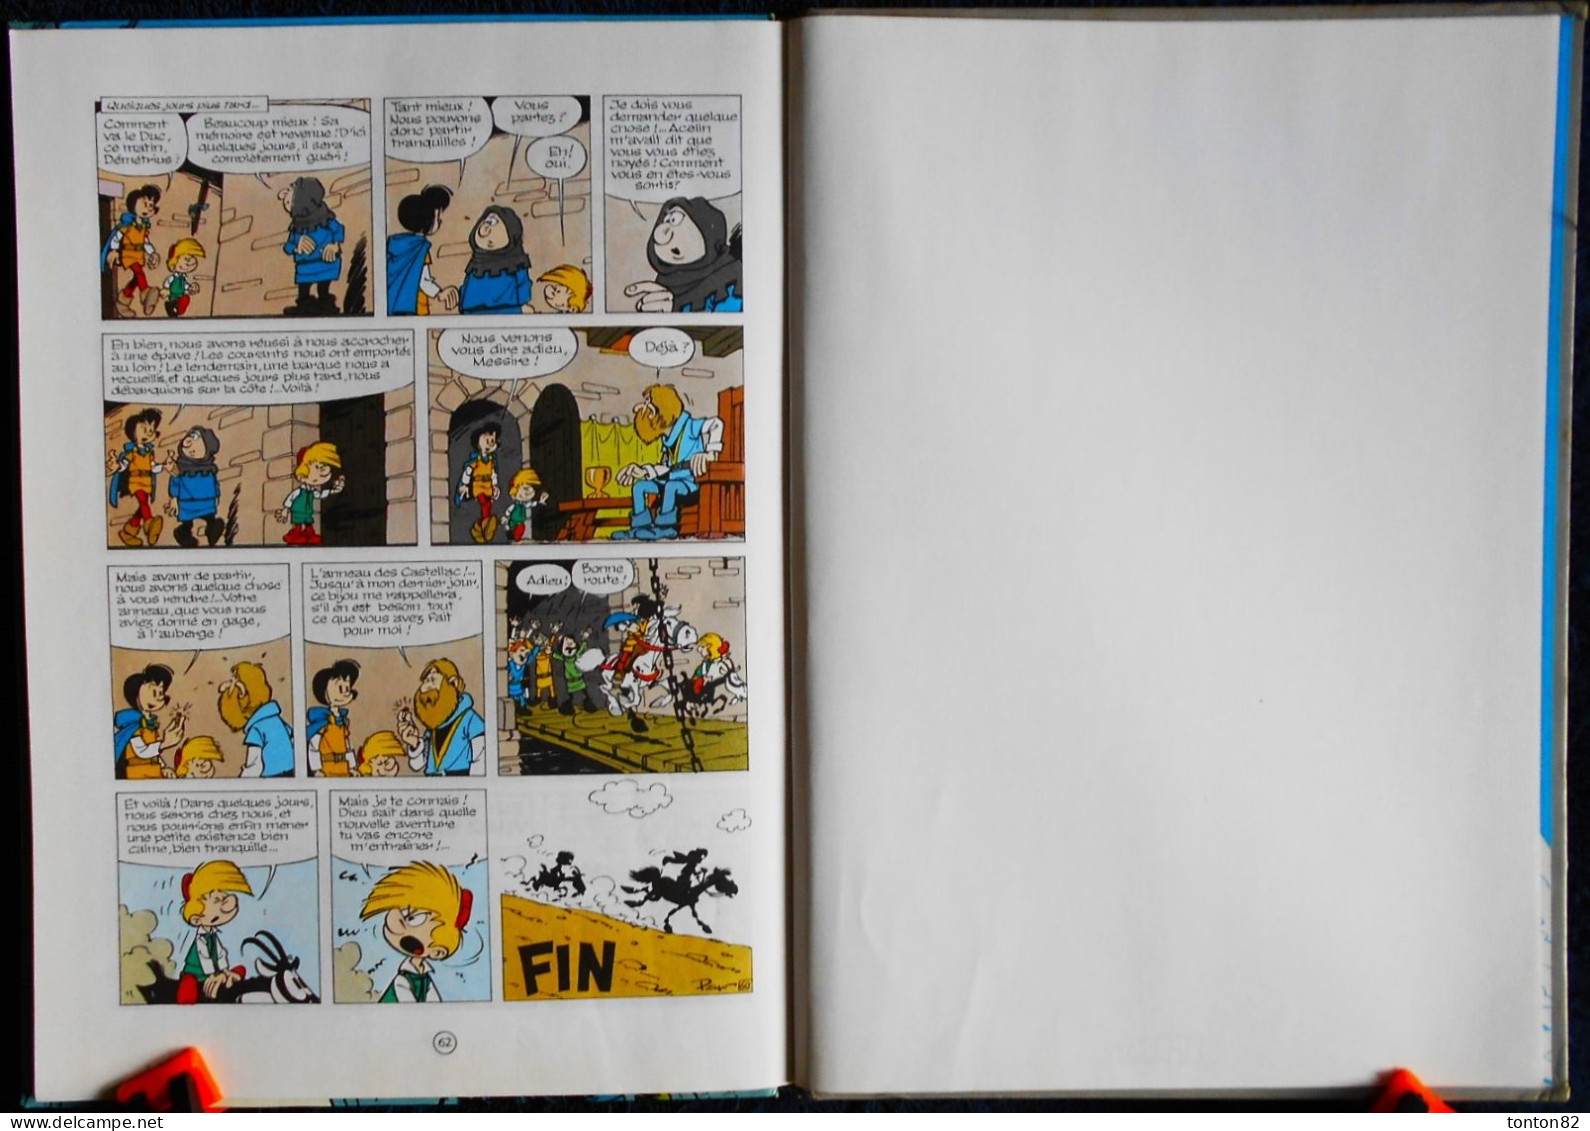 Peyo - Johan et Pirlouit N° 11 - L'anneau des Castellac - Éditions Dupuis - ( 1993 ) .